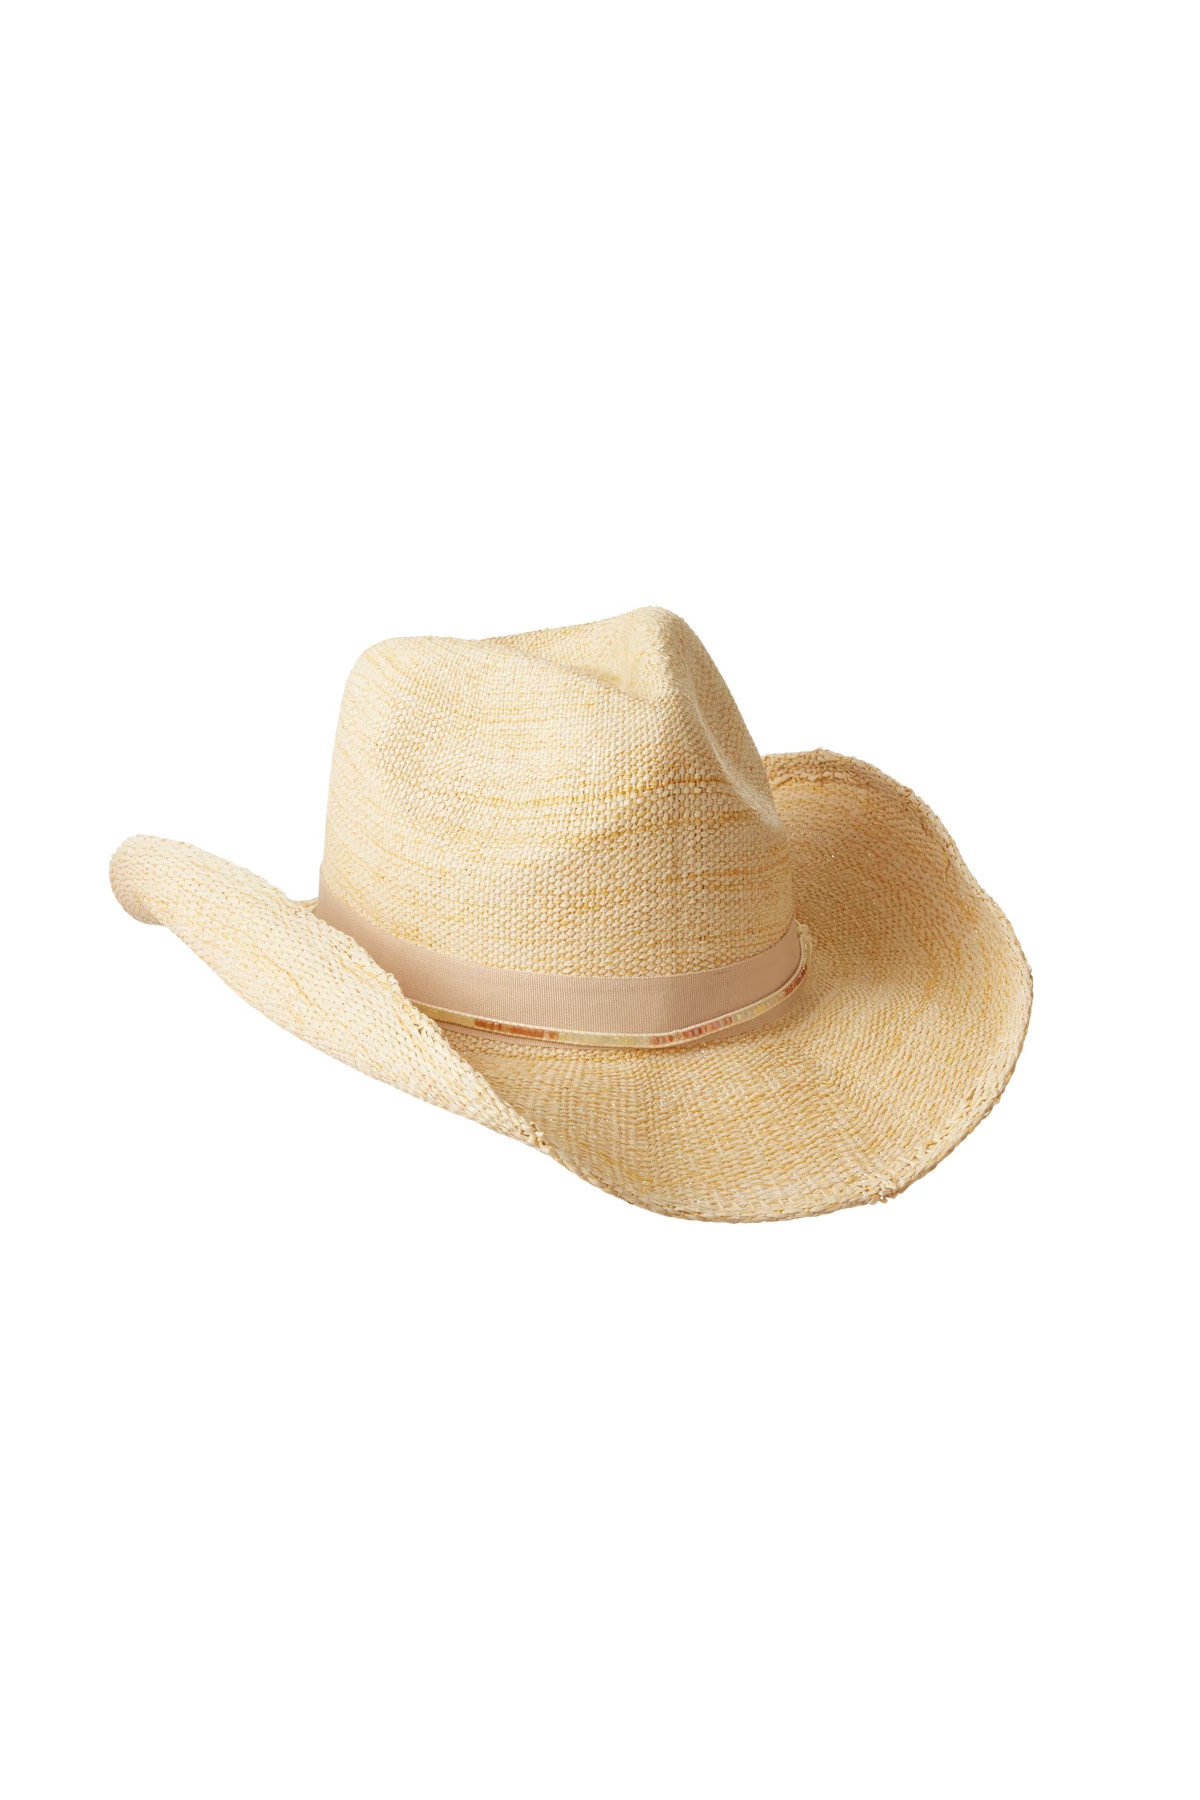 NATURAL Shimmer Cowboy Hat image number 1